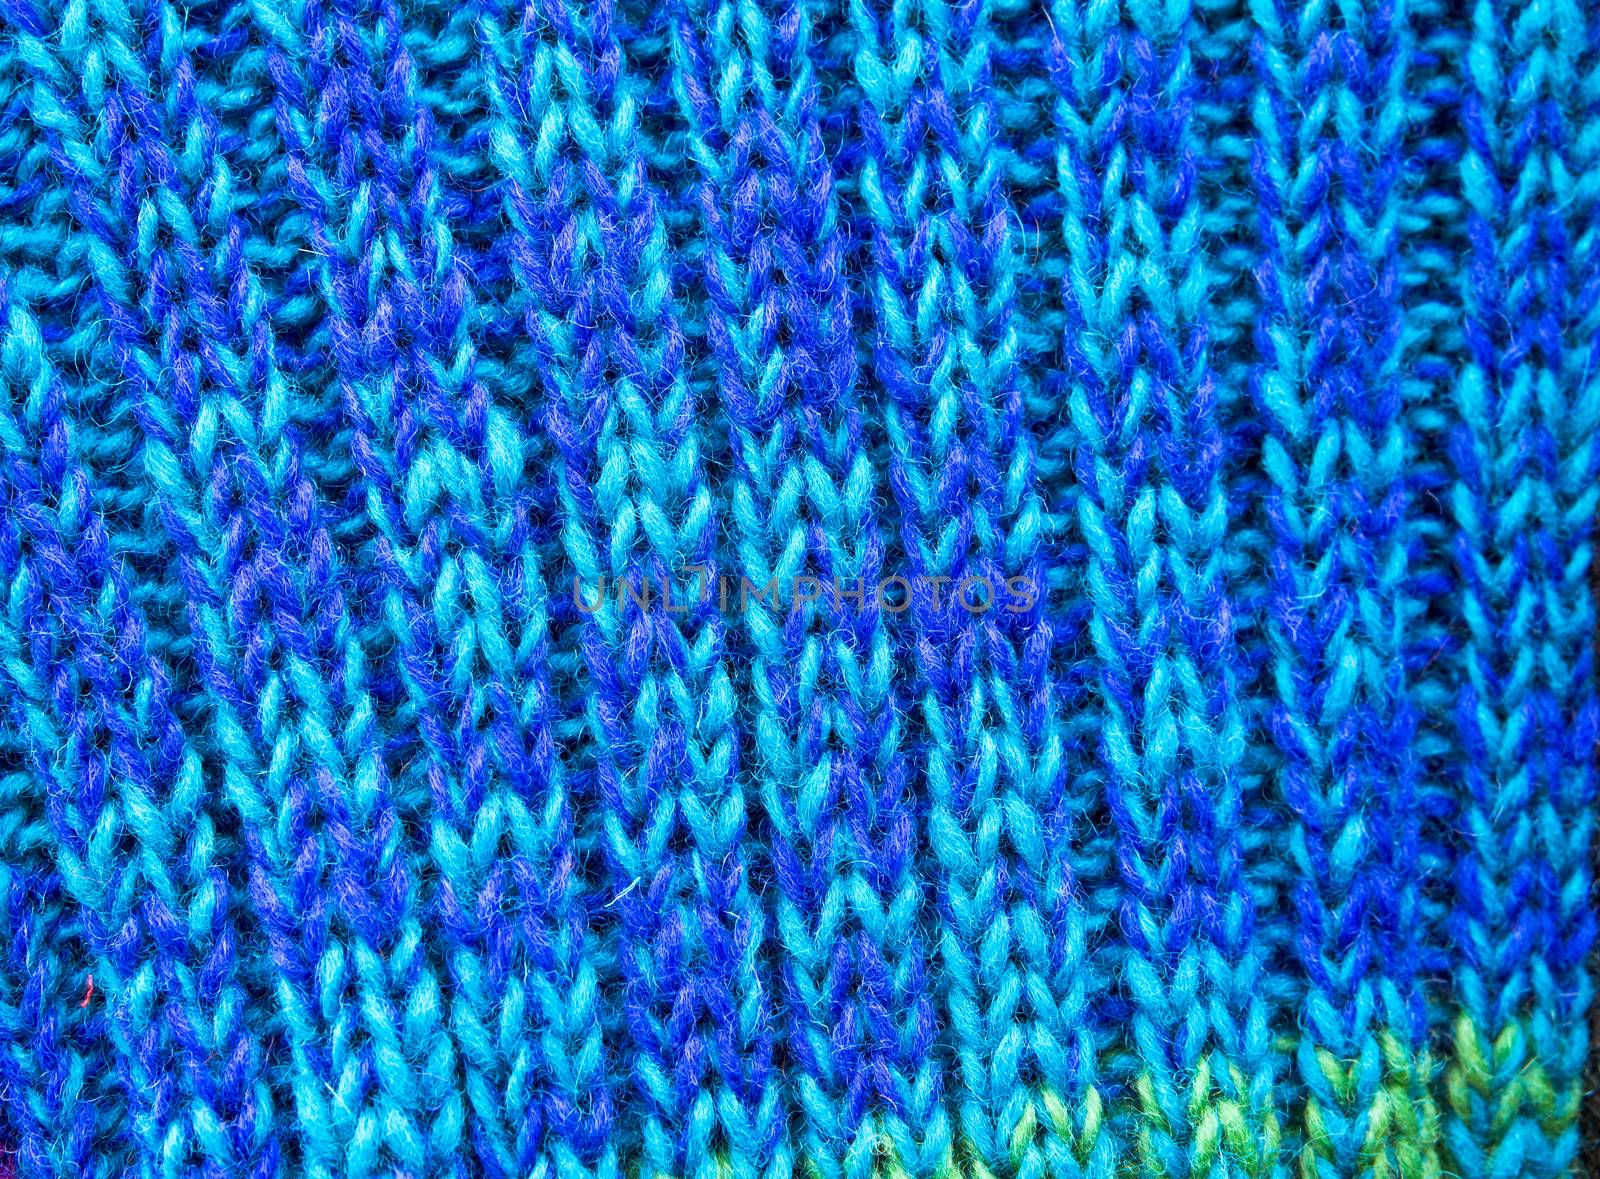 Blue wool by trgowanlock